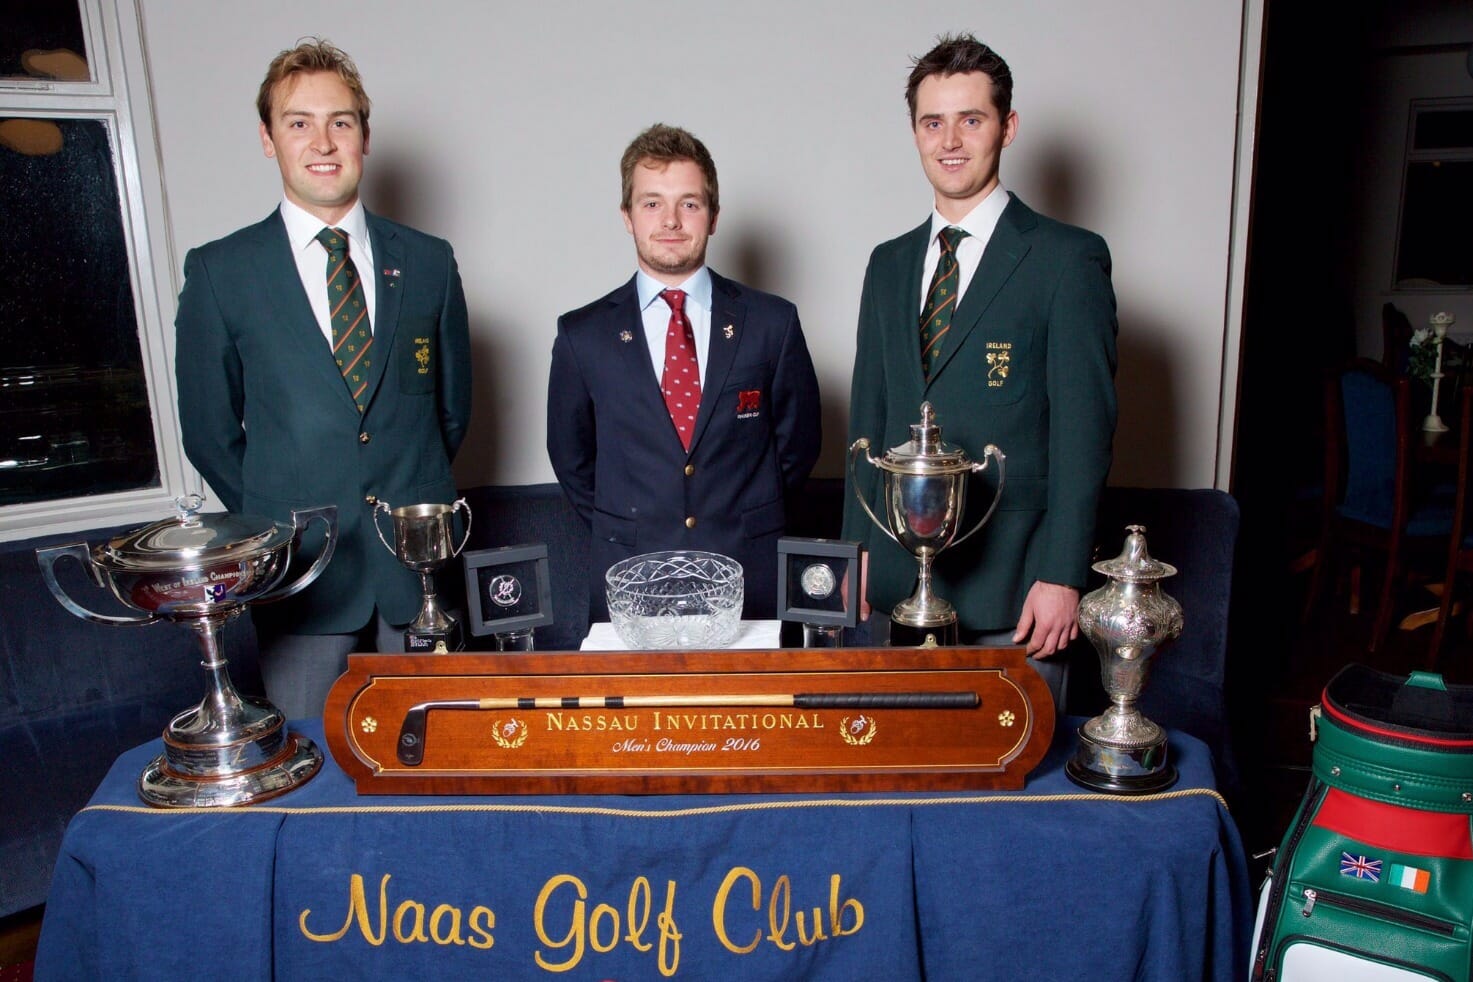 Naas Golf Club. A breeding ground of champion golfers